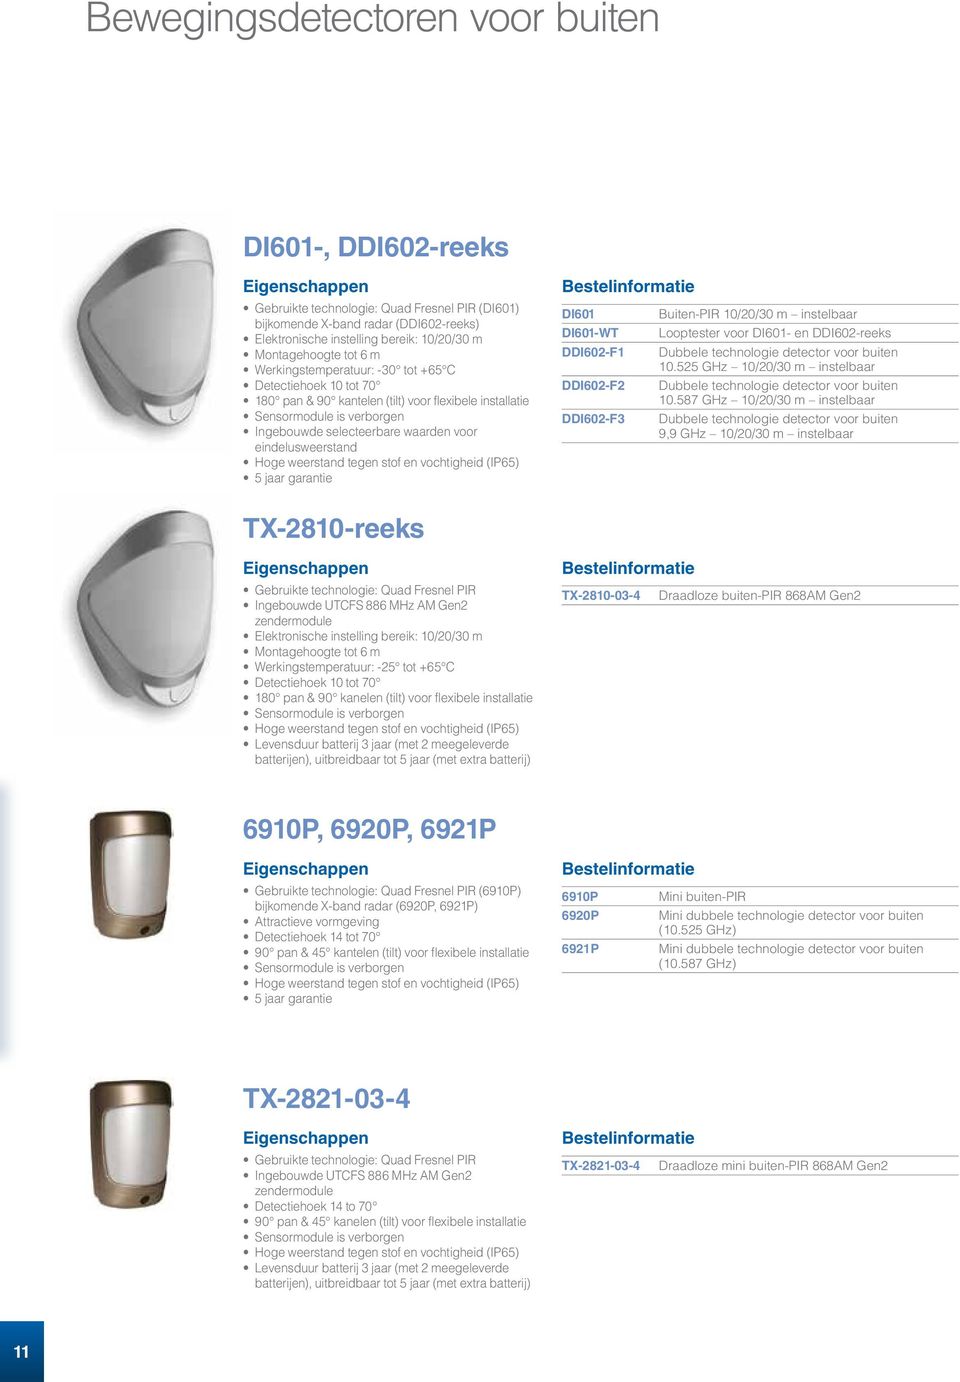 eindelusweerstand Hoge weerstand tegen stof en vochtigheid (IP65) 5 jaar garantie DI601 DI601-WT DDI602-F1 DDI602-F2 DDI602-F3 Buiten-PIR 10/20/30 m instelbaar Looptester voor DI601- en DDI602-reeks